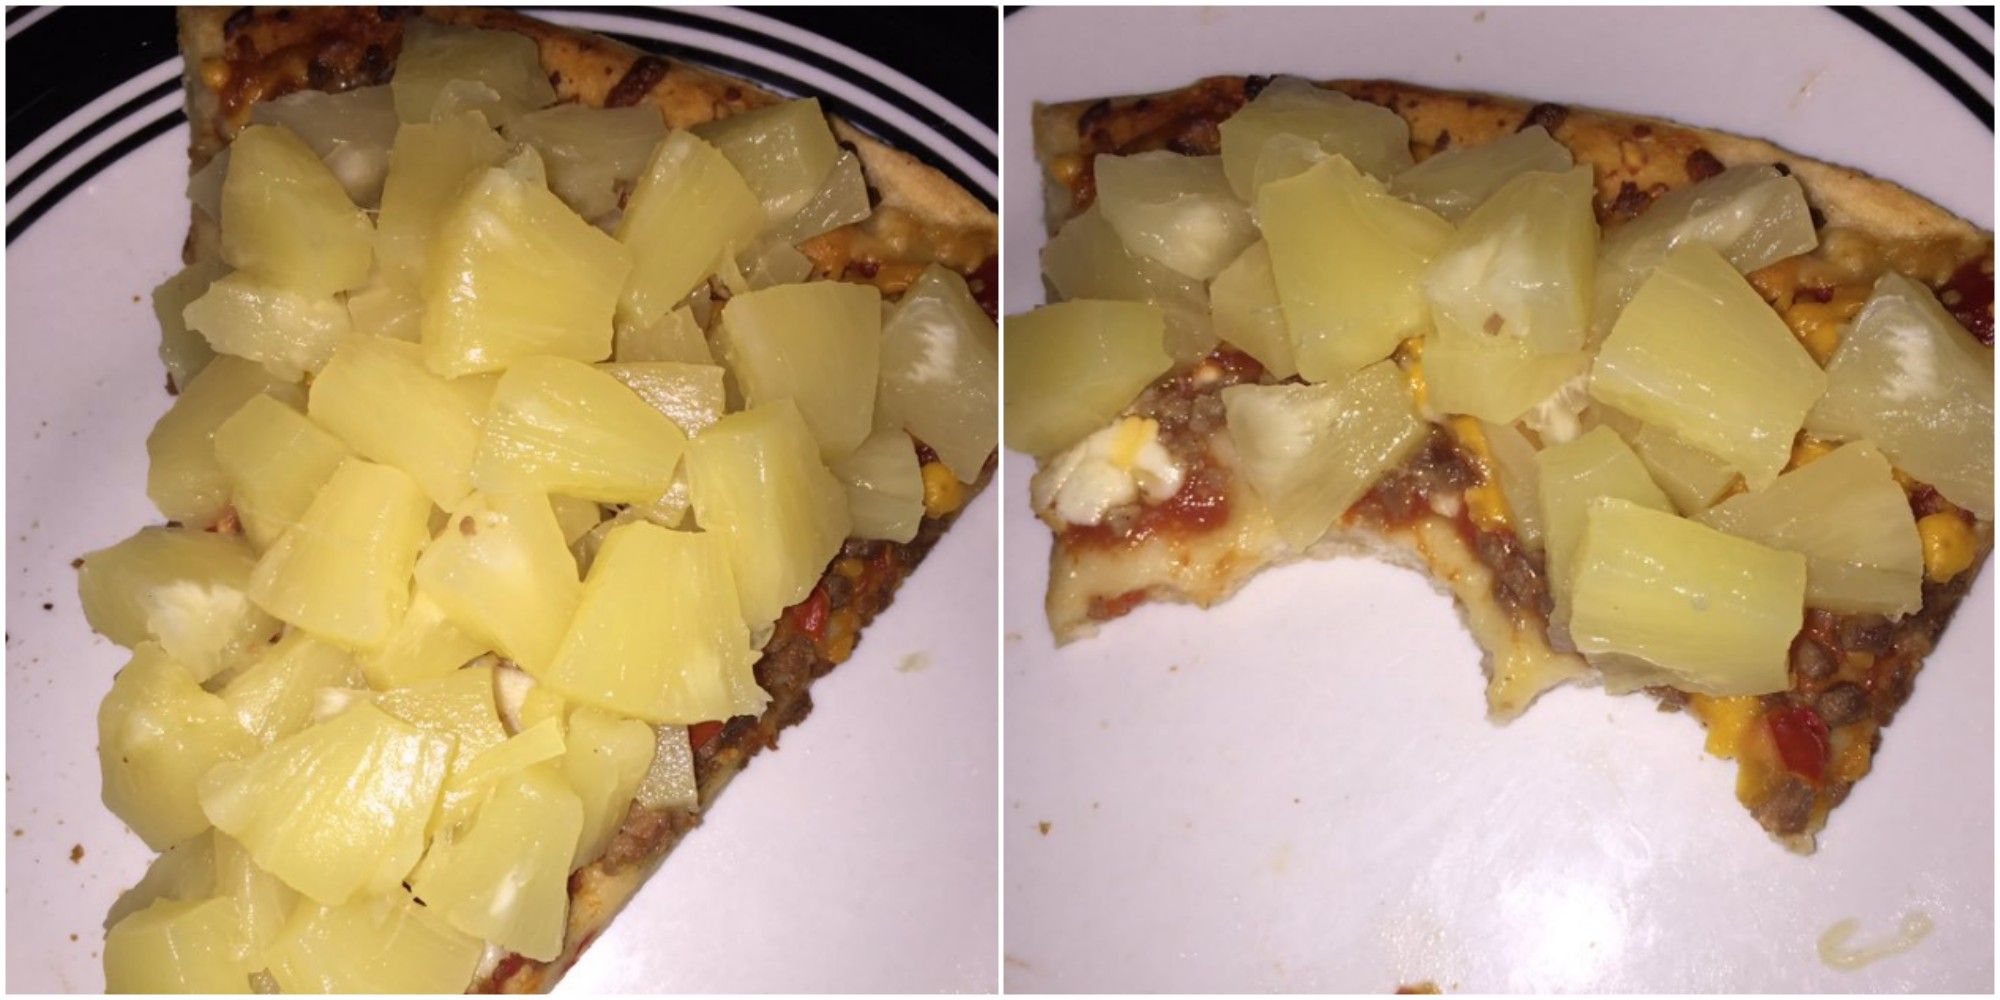 pineapple on pizza debate essay